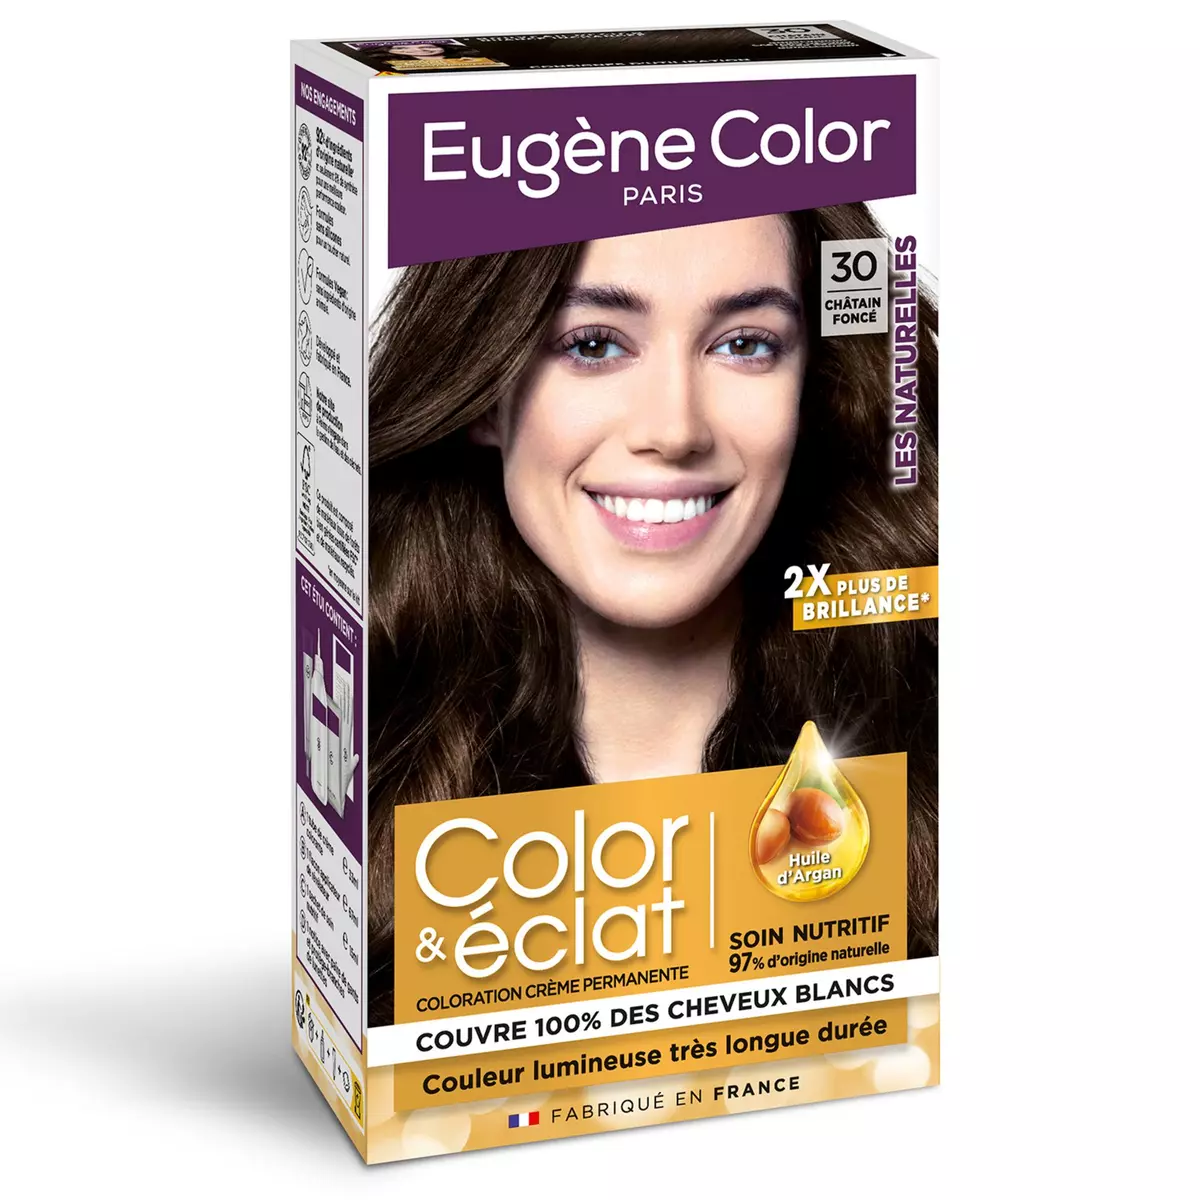 EUGENE COLOR Color & Eclat coloration permanente très longue durée 30 châtain foncé 3 produits 1 kit